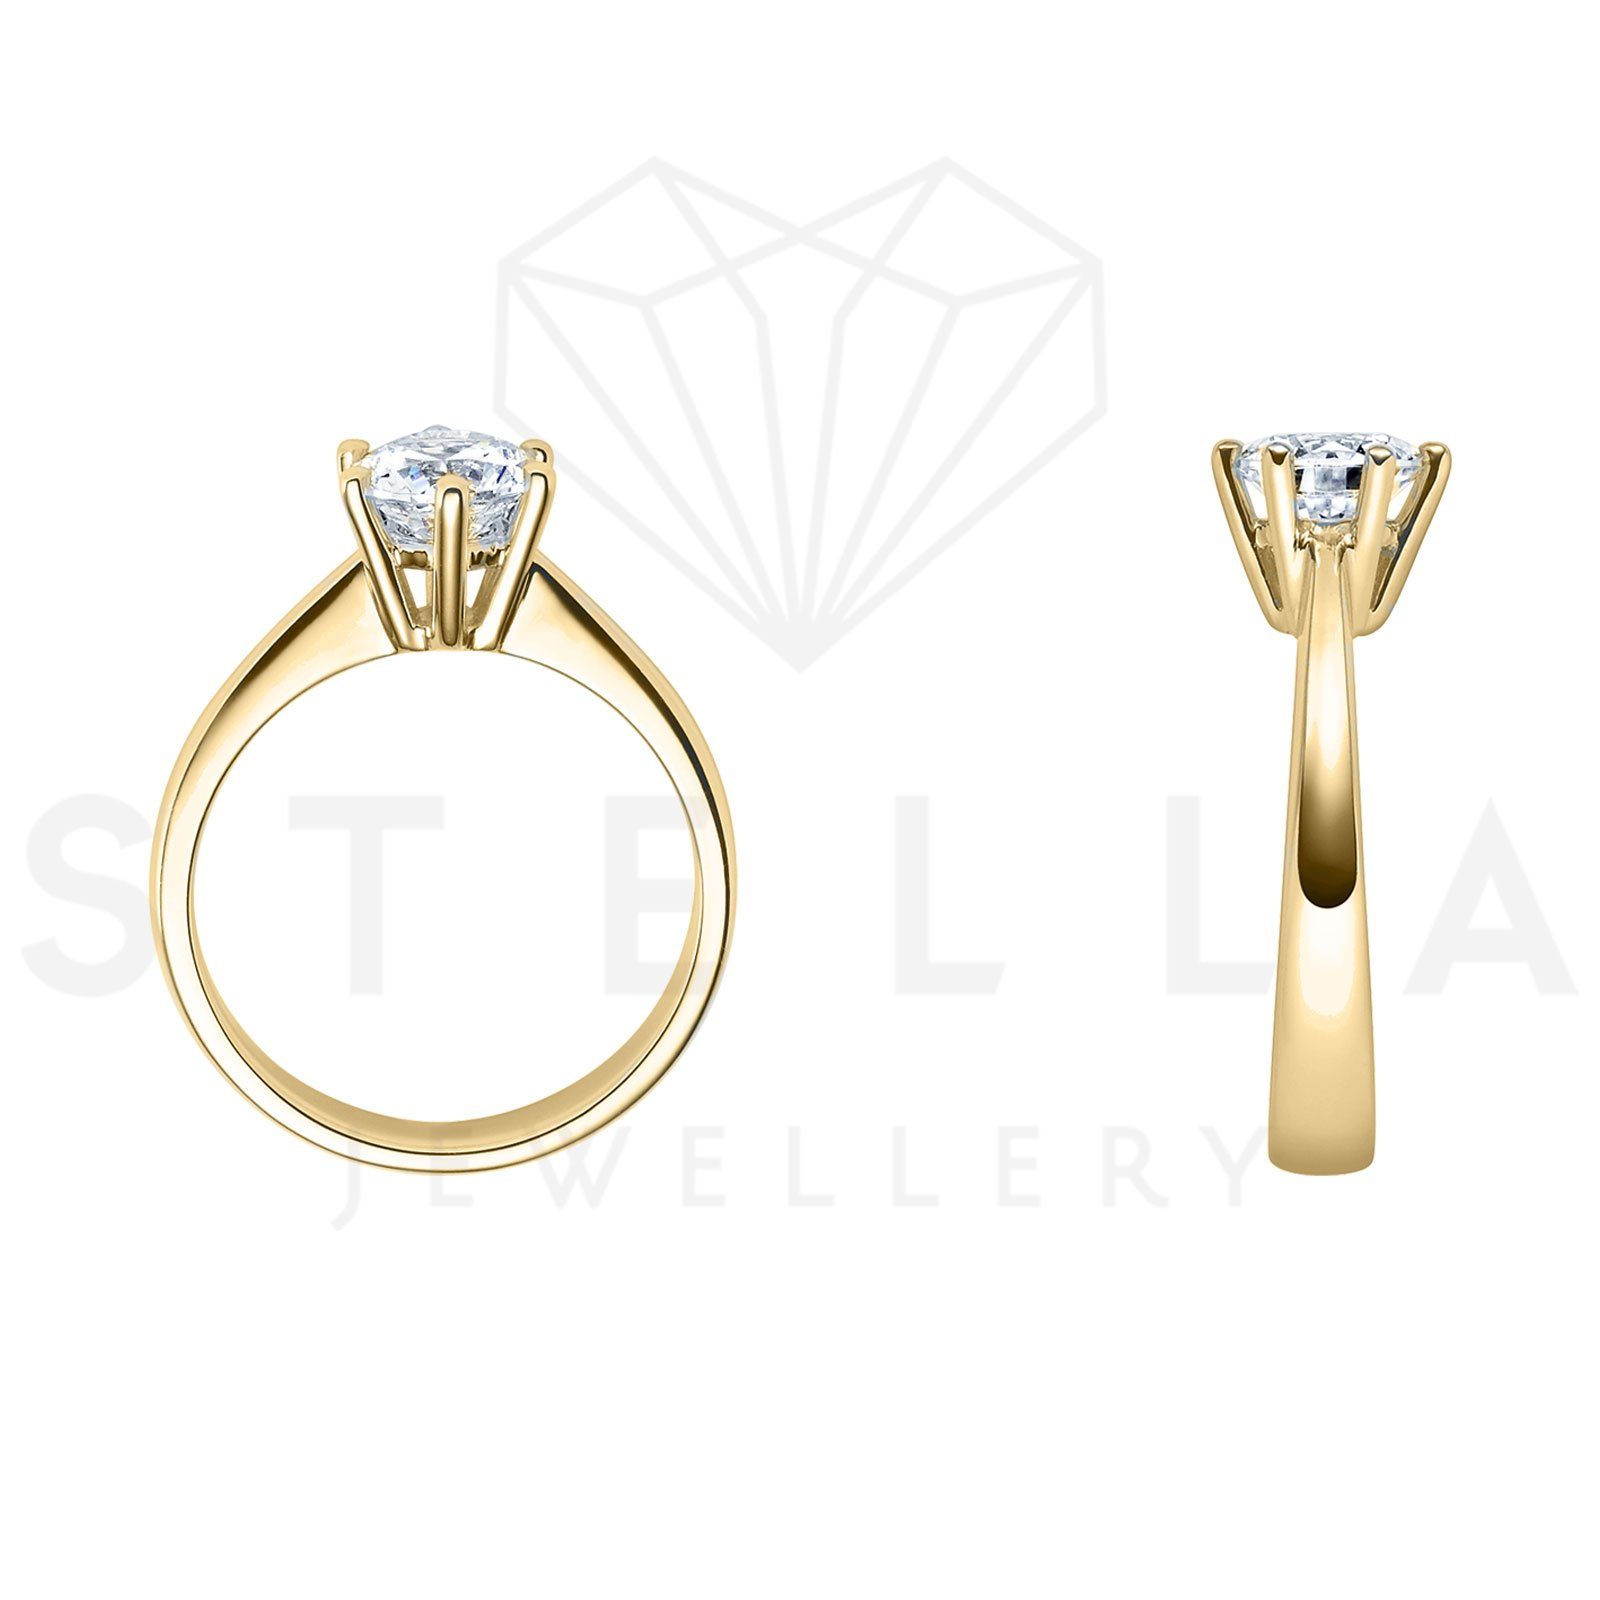 Herren Schmuck Stella-Jewellery Verlobungsring 585er Gelbgold Verlobungsring Diamant Gr. 54 (inkl. Etui), mit Brillant 0,15ct. -